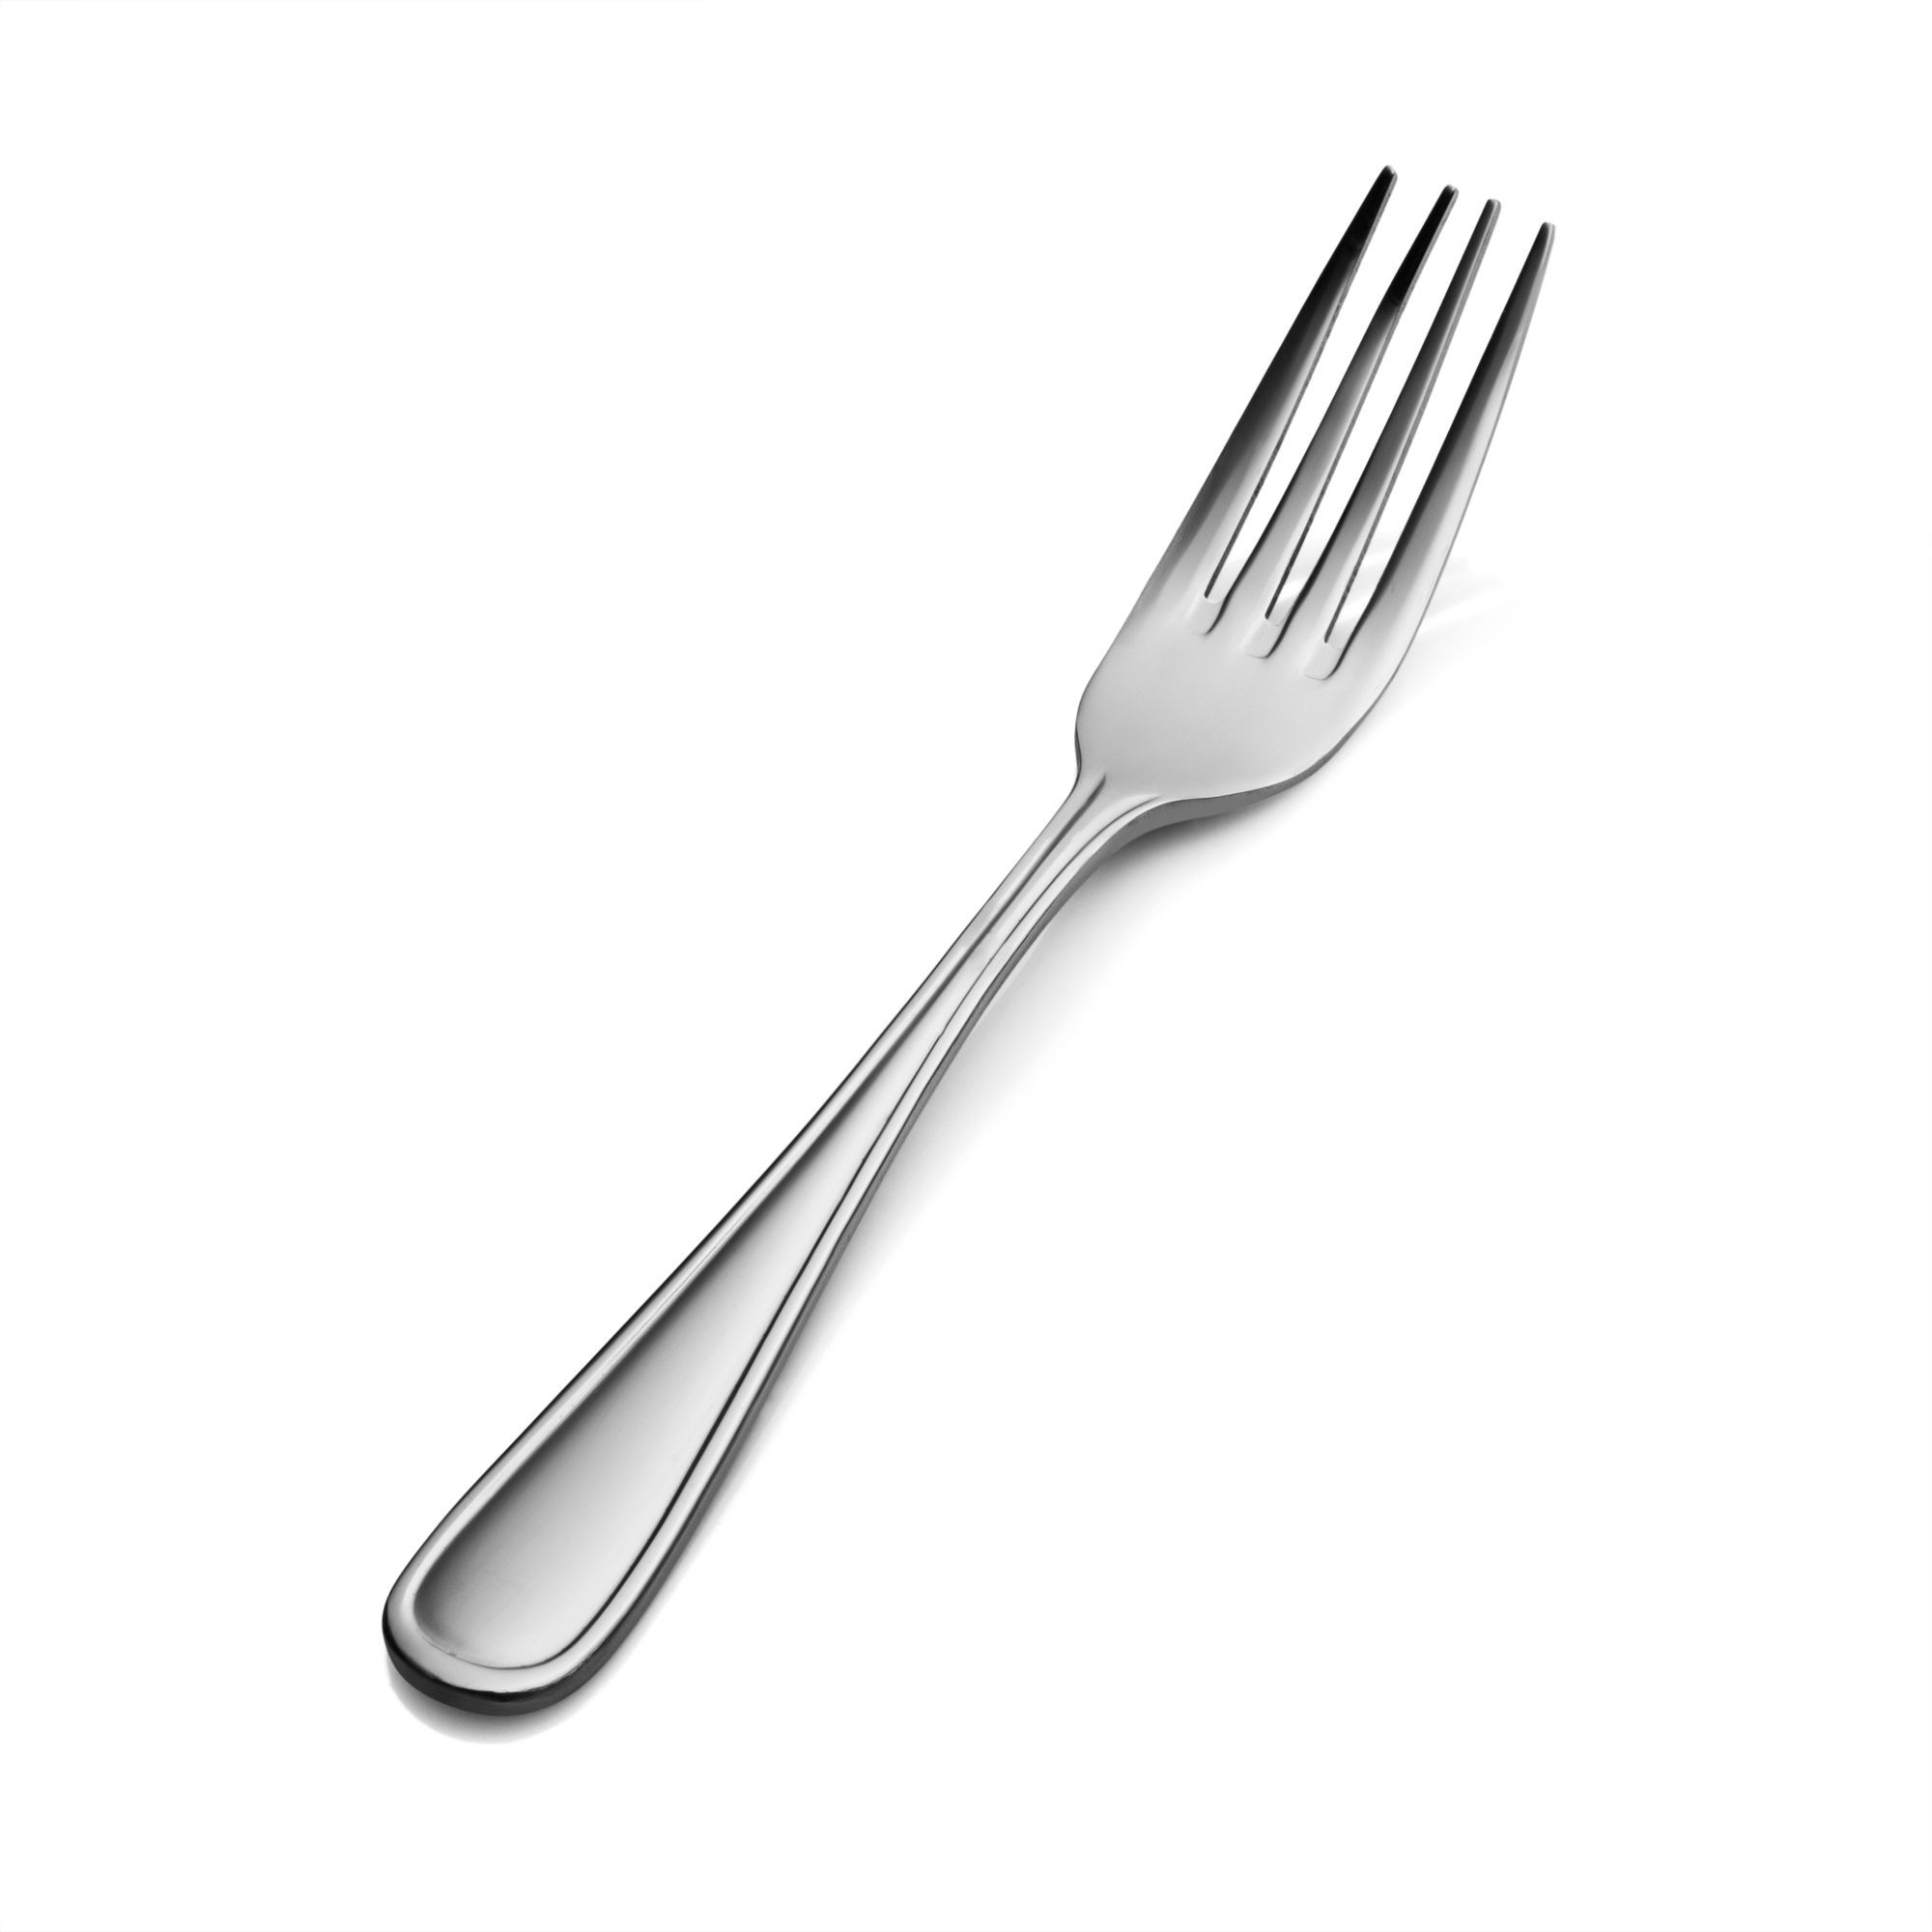 Bon Chef S305 Tuscany 18/8 Stainless Steel Regular Dinner Fork